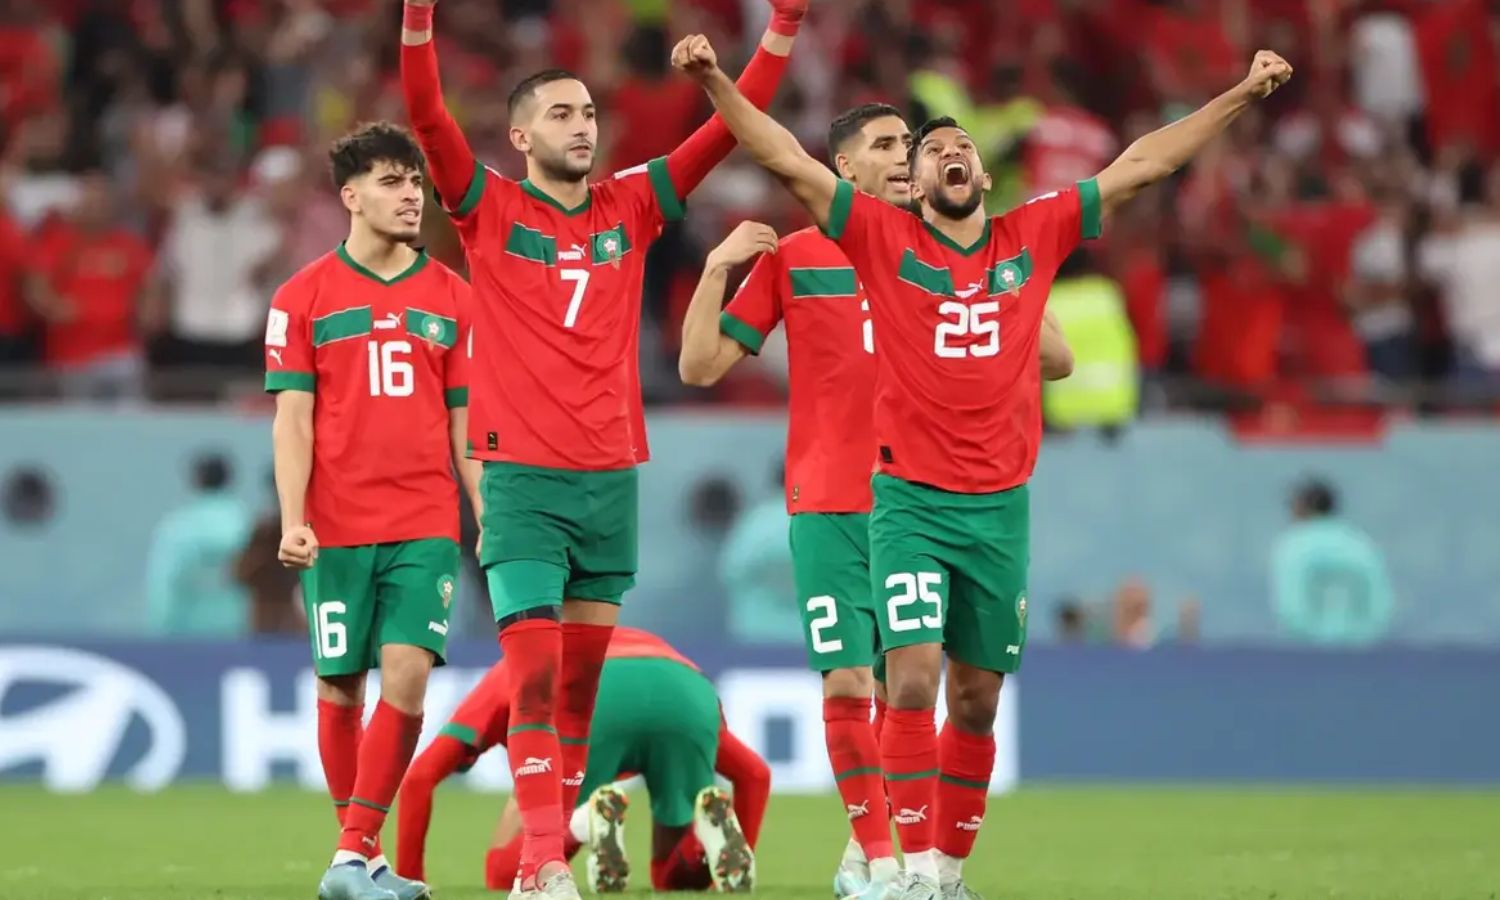 لاعبو المنتخب المغربي يحتفلون بتسجيل هدف الفوز على البرازيل في مباراة ودية في مدينة طنجة- 26 من آذار 2023 (Getty Images/ The ringer)
